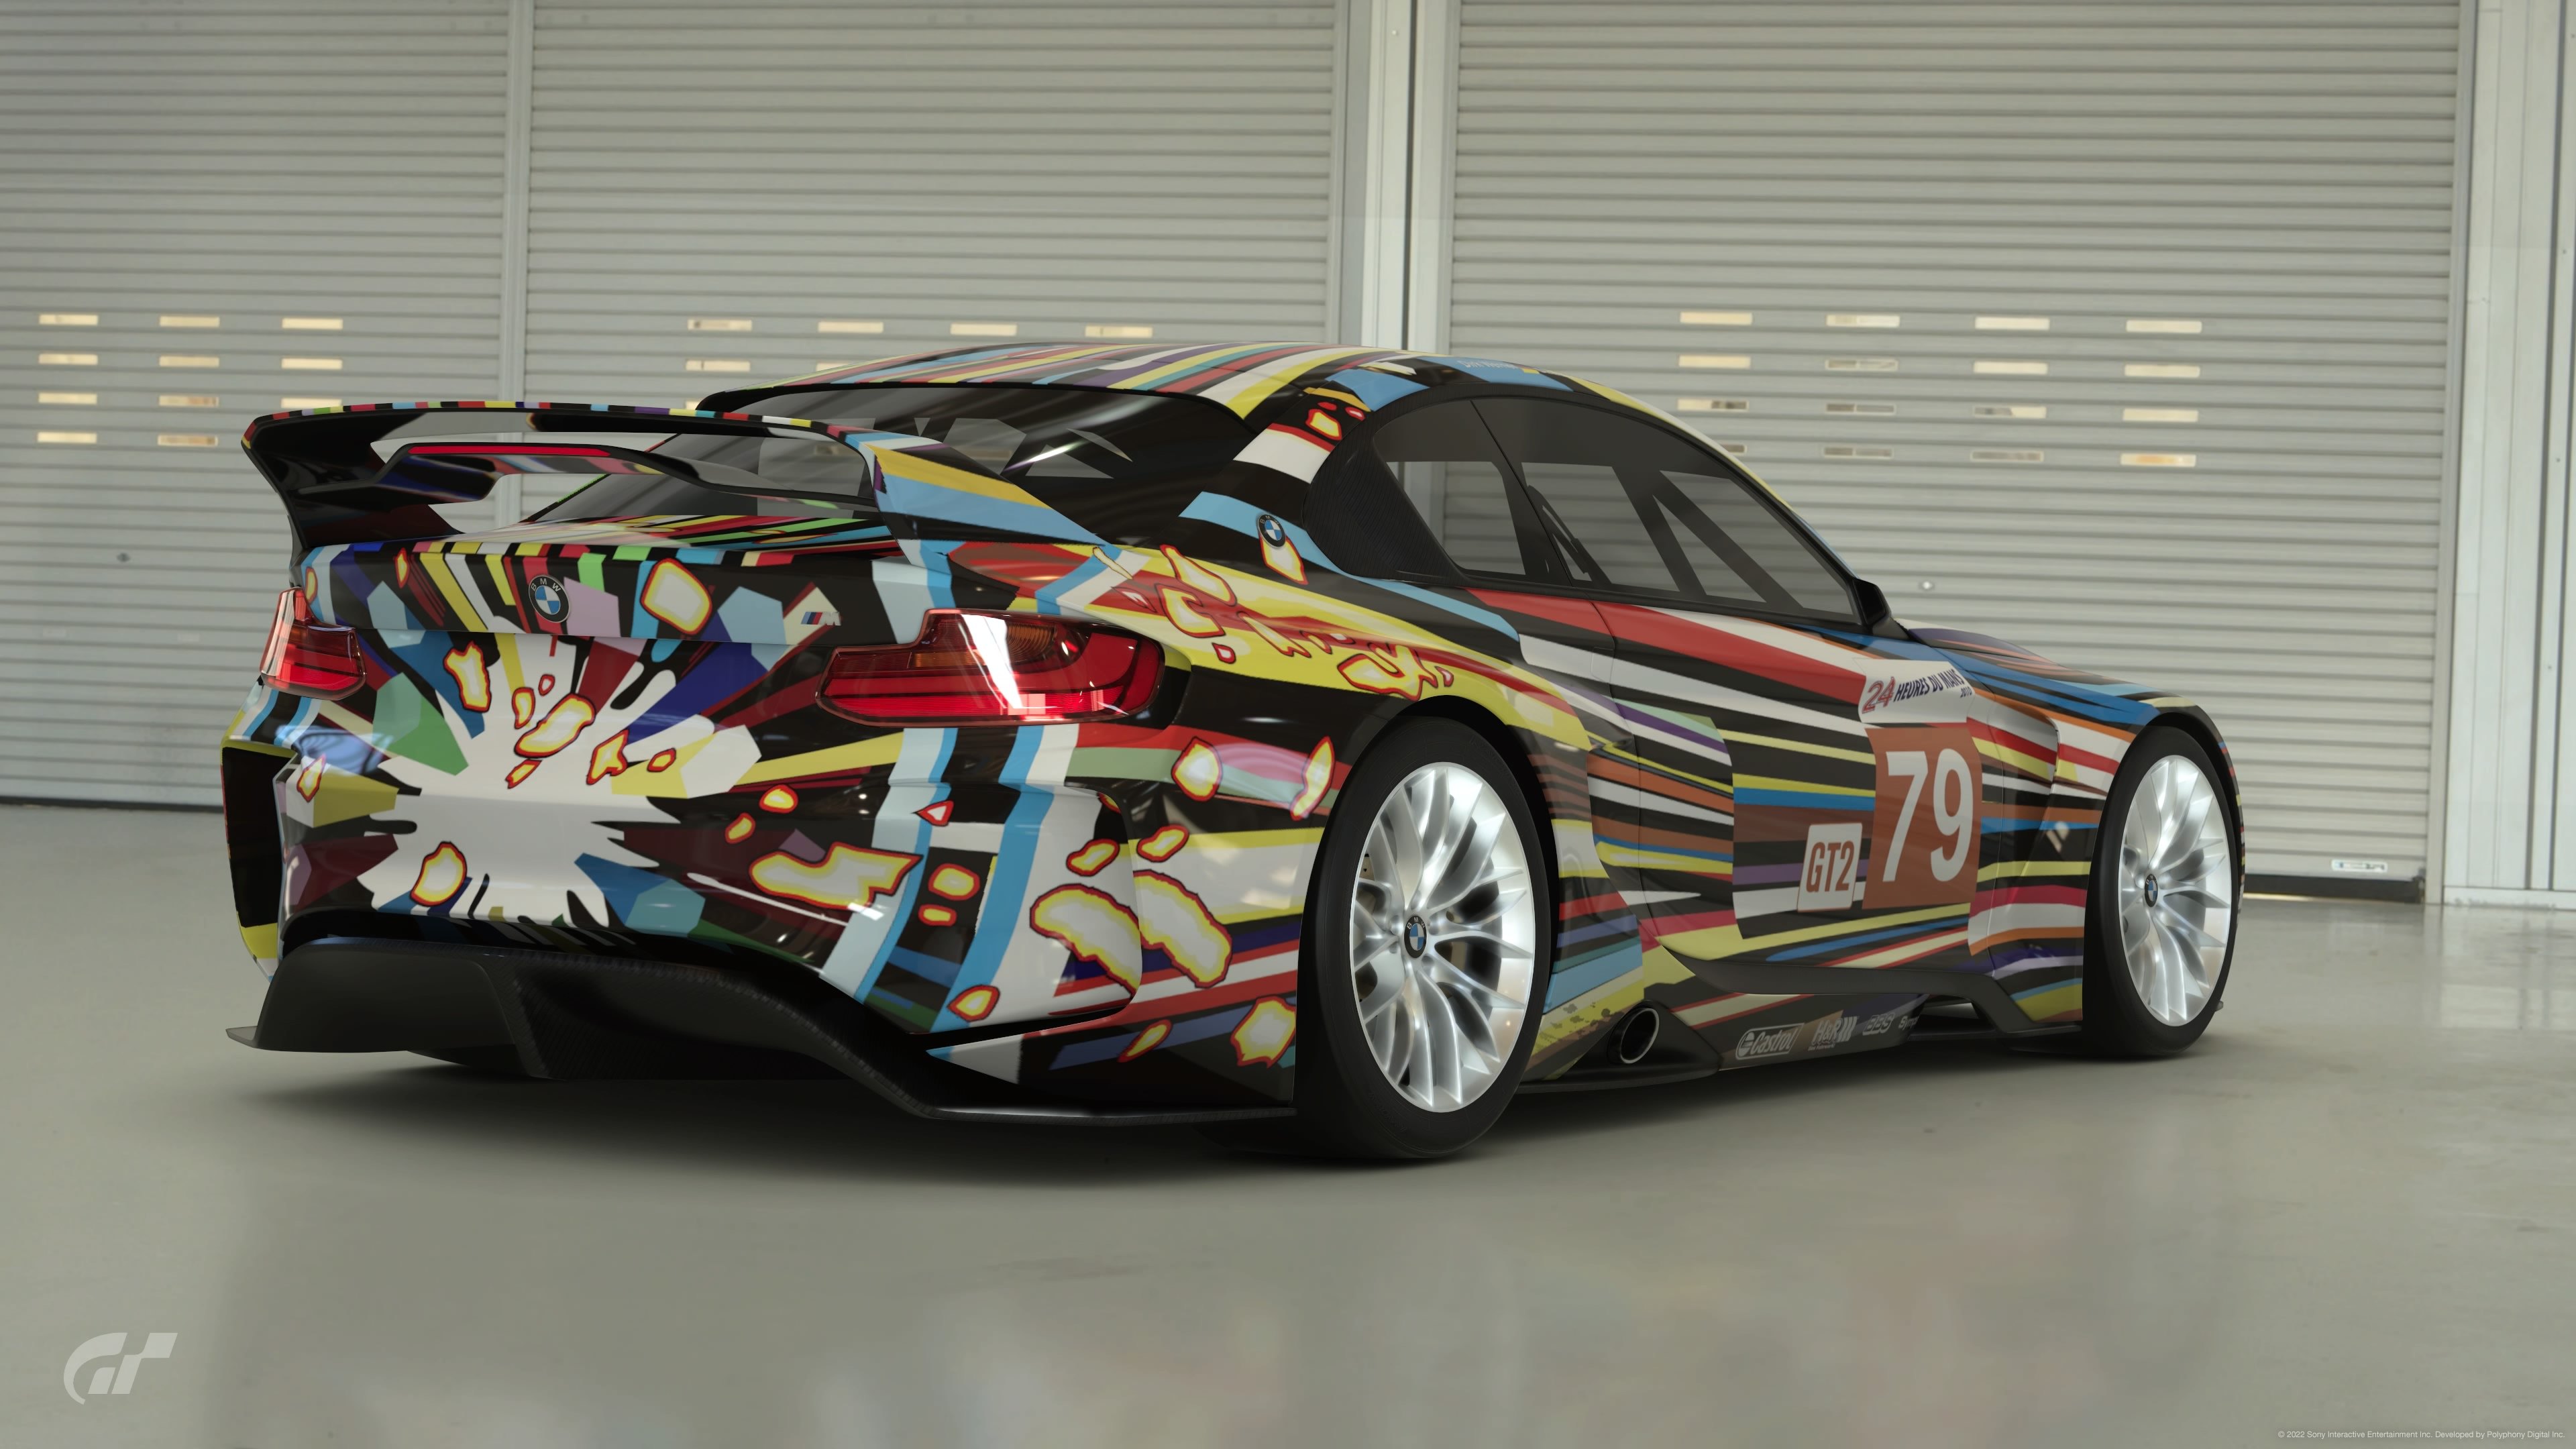 Jeff Koons, M3 GT2 Art Car, 2010